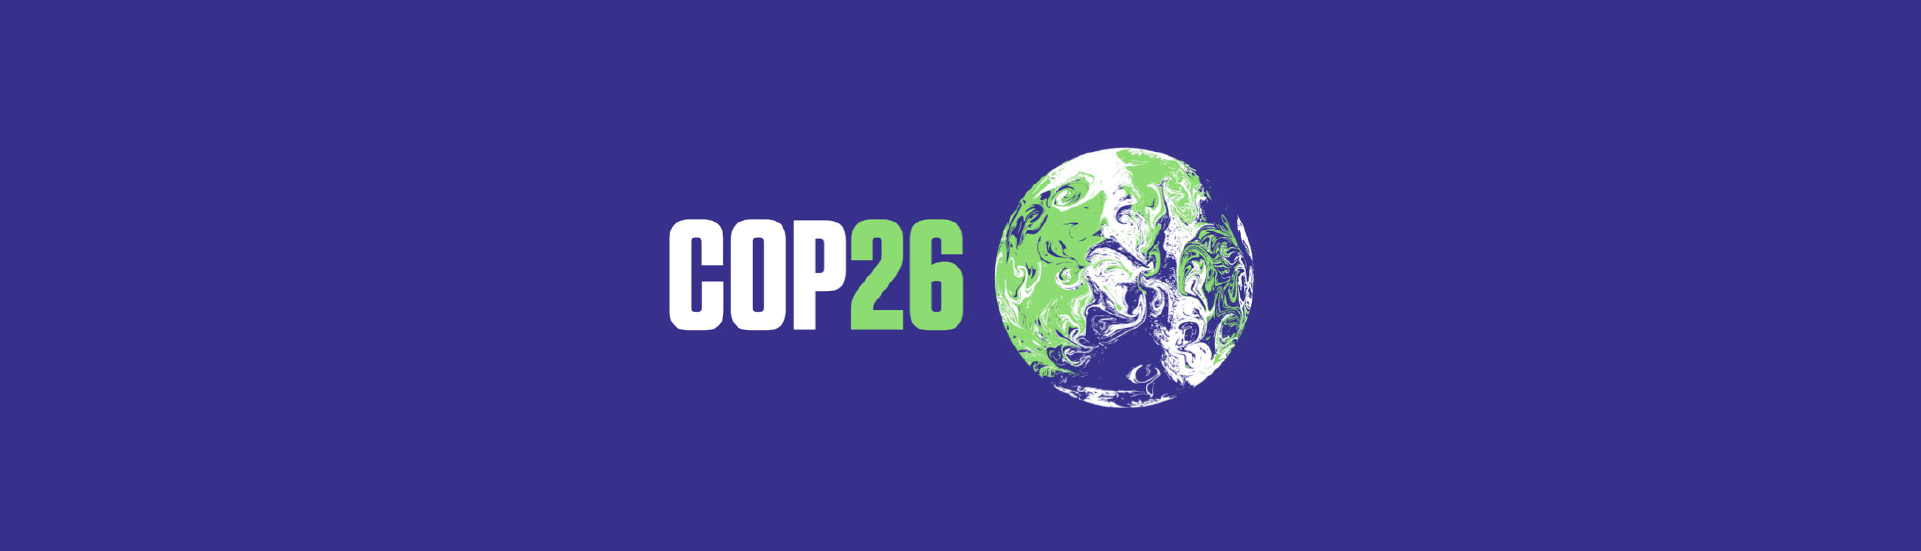 Confira os principais destaques da participação das cooperativas brasileiras na COP26